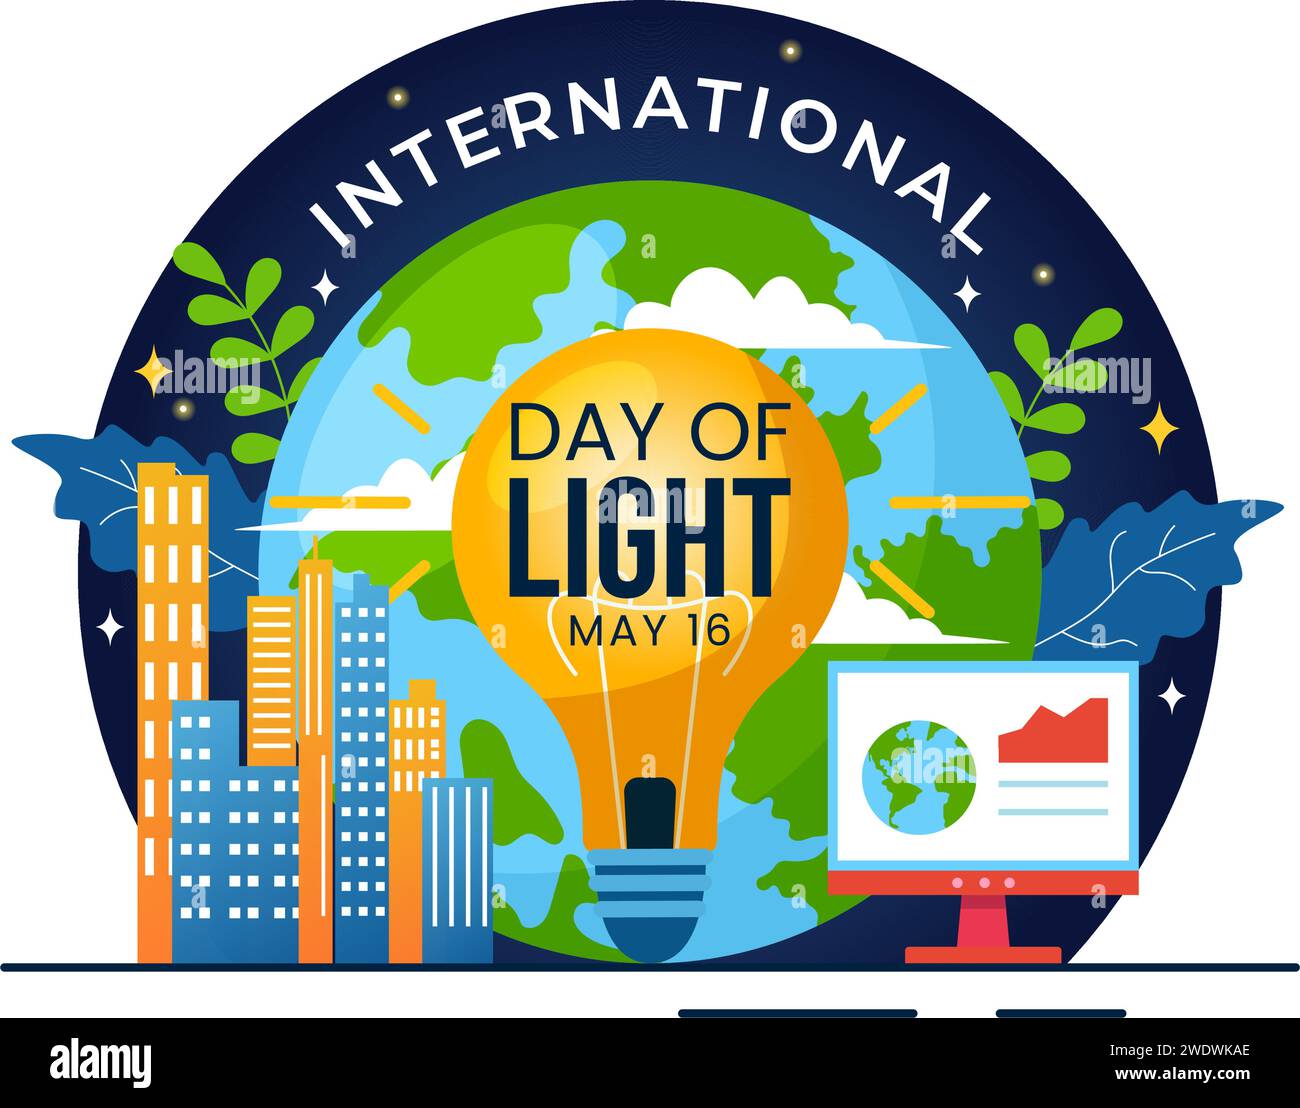 Internationaler Tag des Lichtvektors Illustration am 16. Mai zur Bedeutung des Gebrauchs von Lampe und der Ersparnisse im menschlichen Leben in flachem Zeichentrickhintergrund Stock Vektor